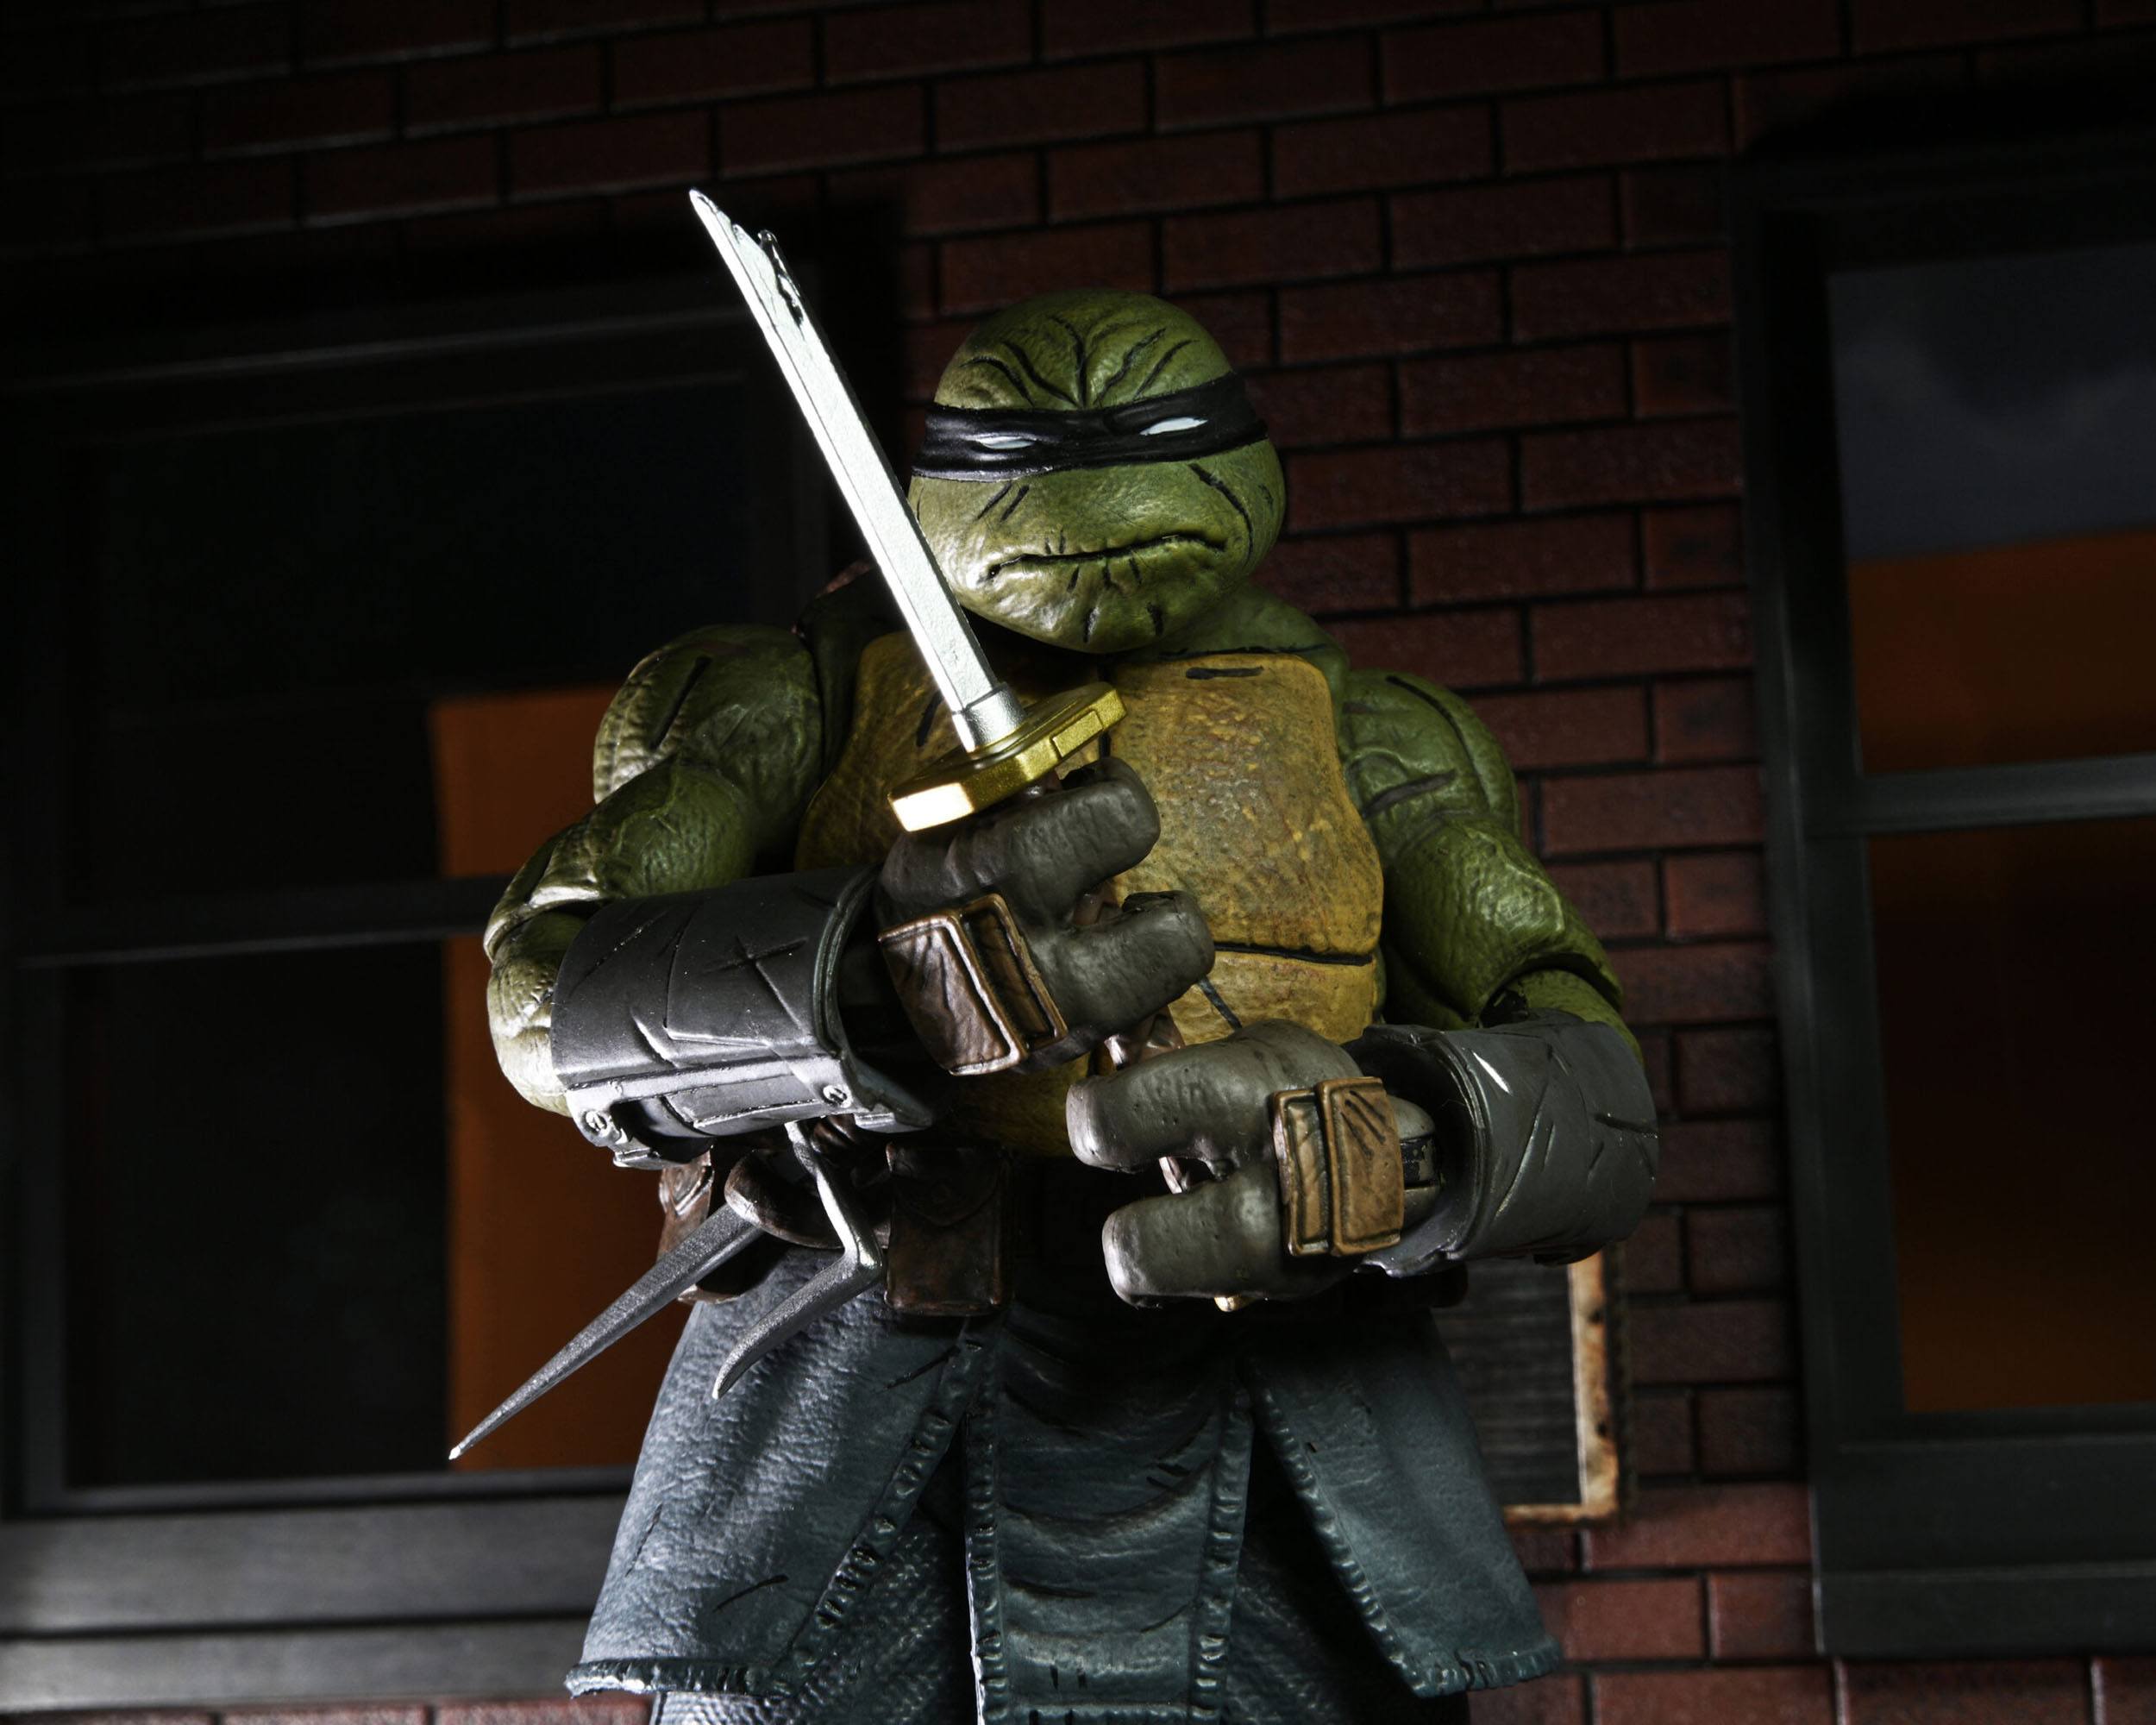 Teenage Mutant Ninja Turtles (IDW Comics) Actionfigur Ultimate The Last Ronin (Unarmored) 18 cm NECA54269 634482542699